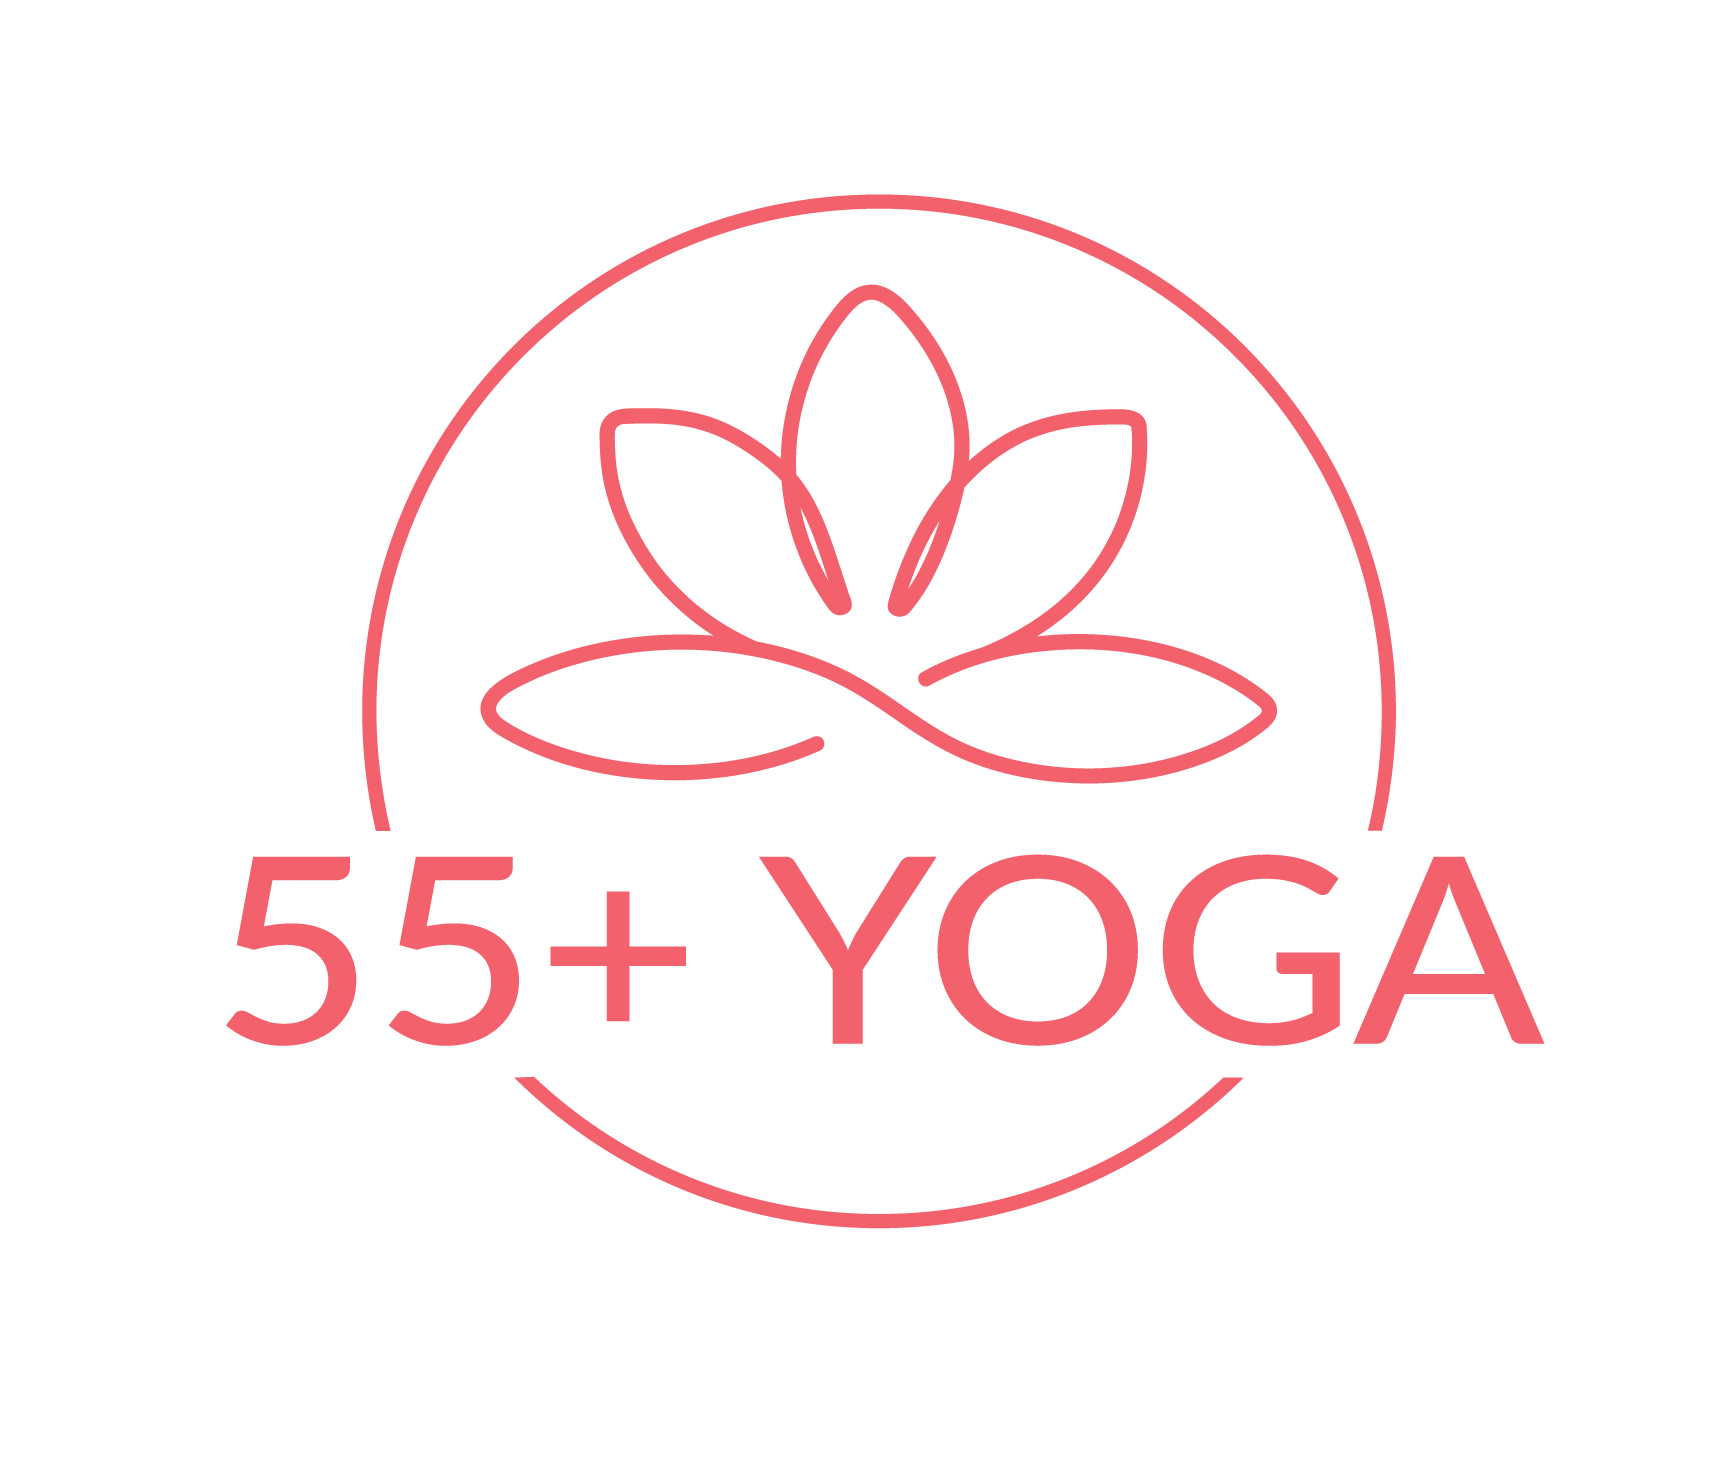 L’AREQ offre des sessions gratuites de yoga à ses membres avec 55+ YOGA